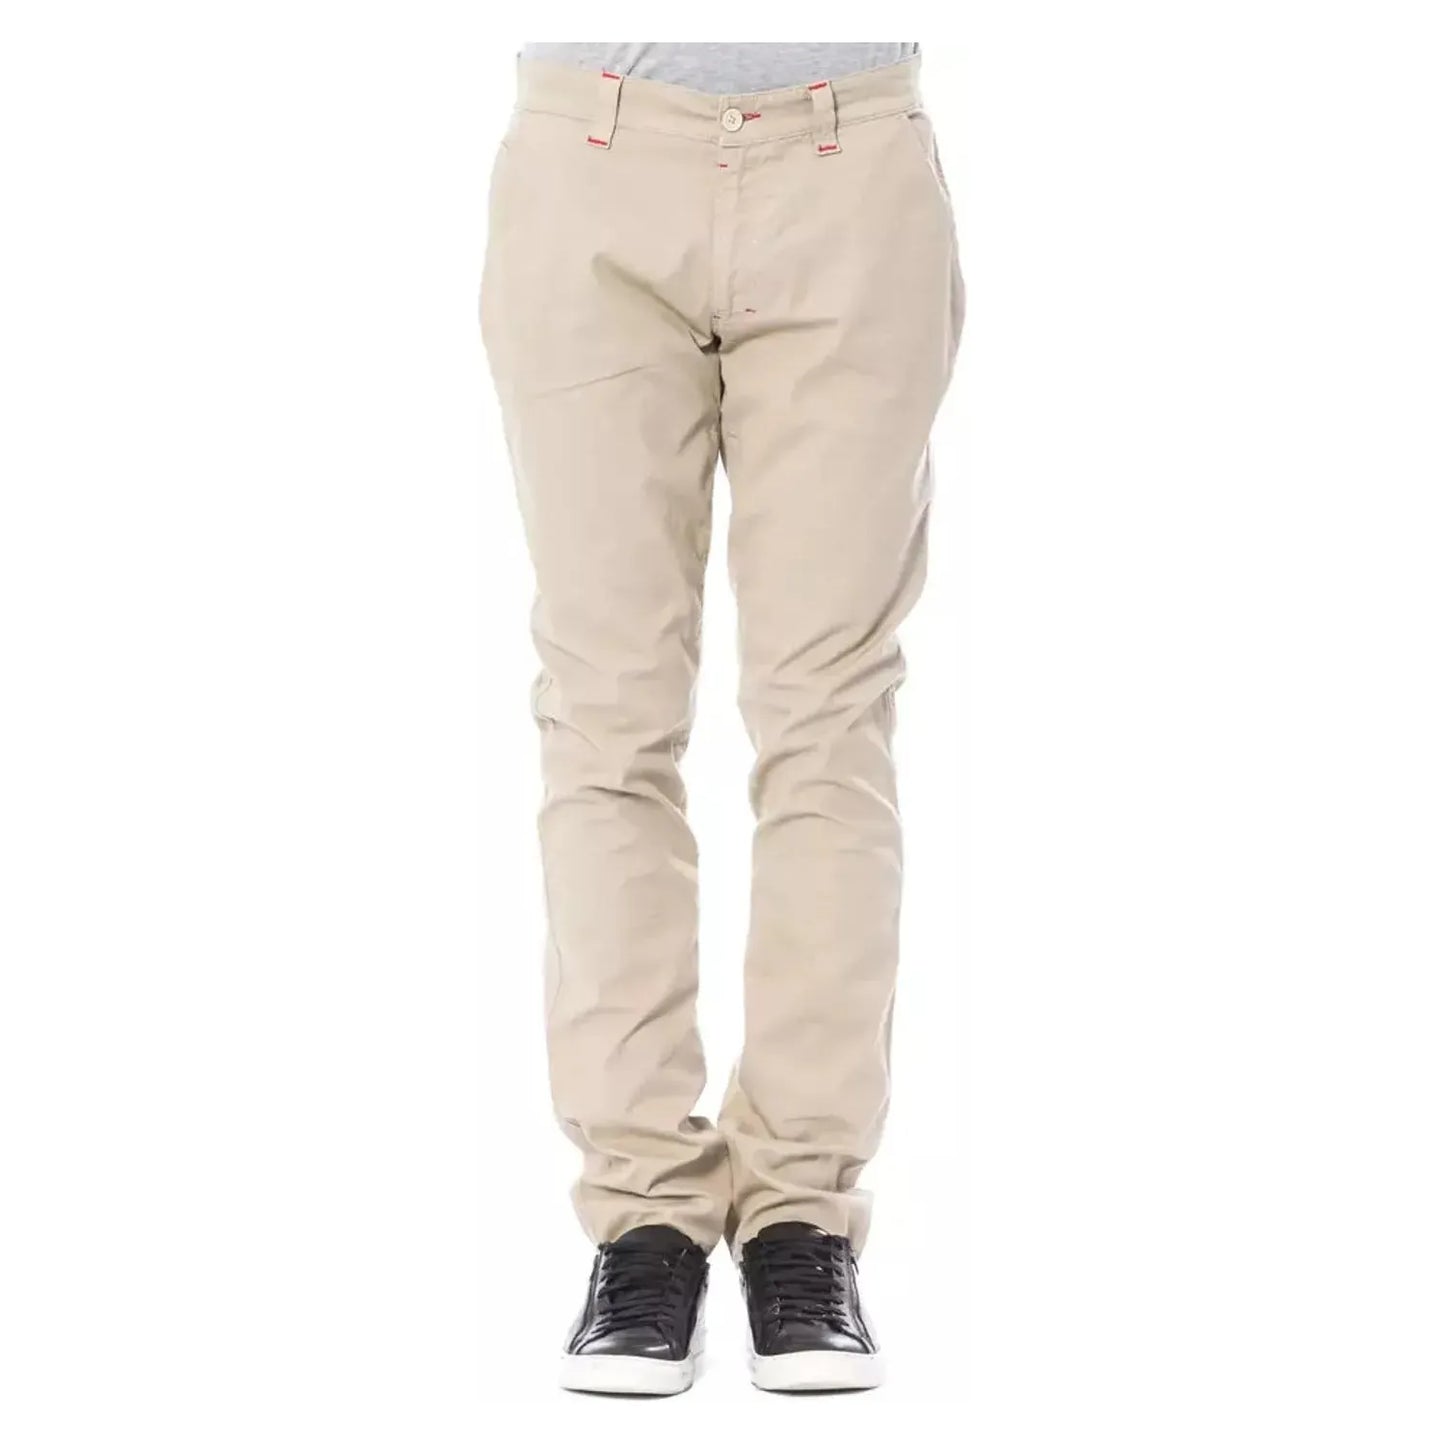 Verri Beige Slim Fit Chino Pants beige-cotton-jeans-pant-14 stock_product_image_18277_1363915116-22-f97795d2-709.webp